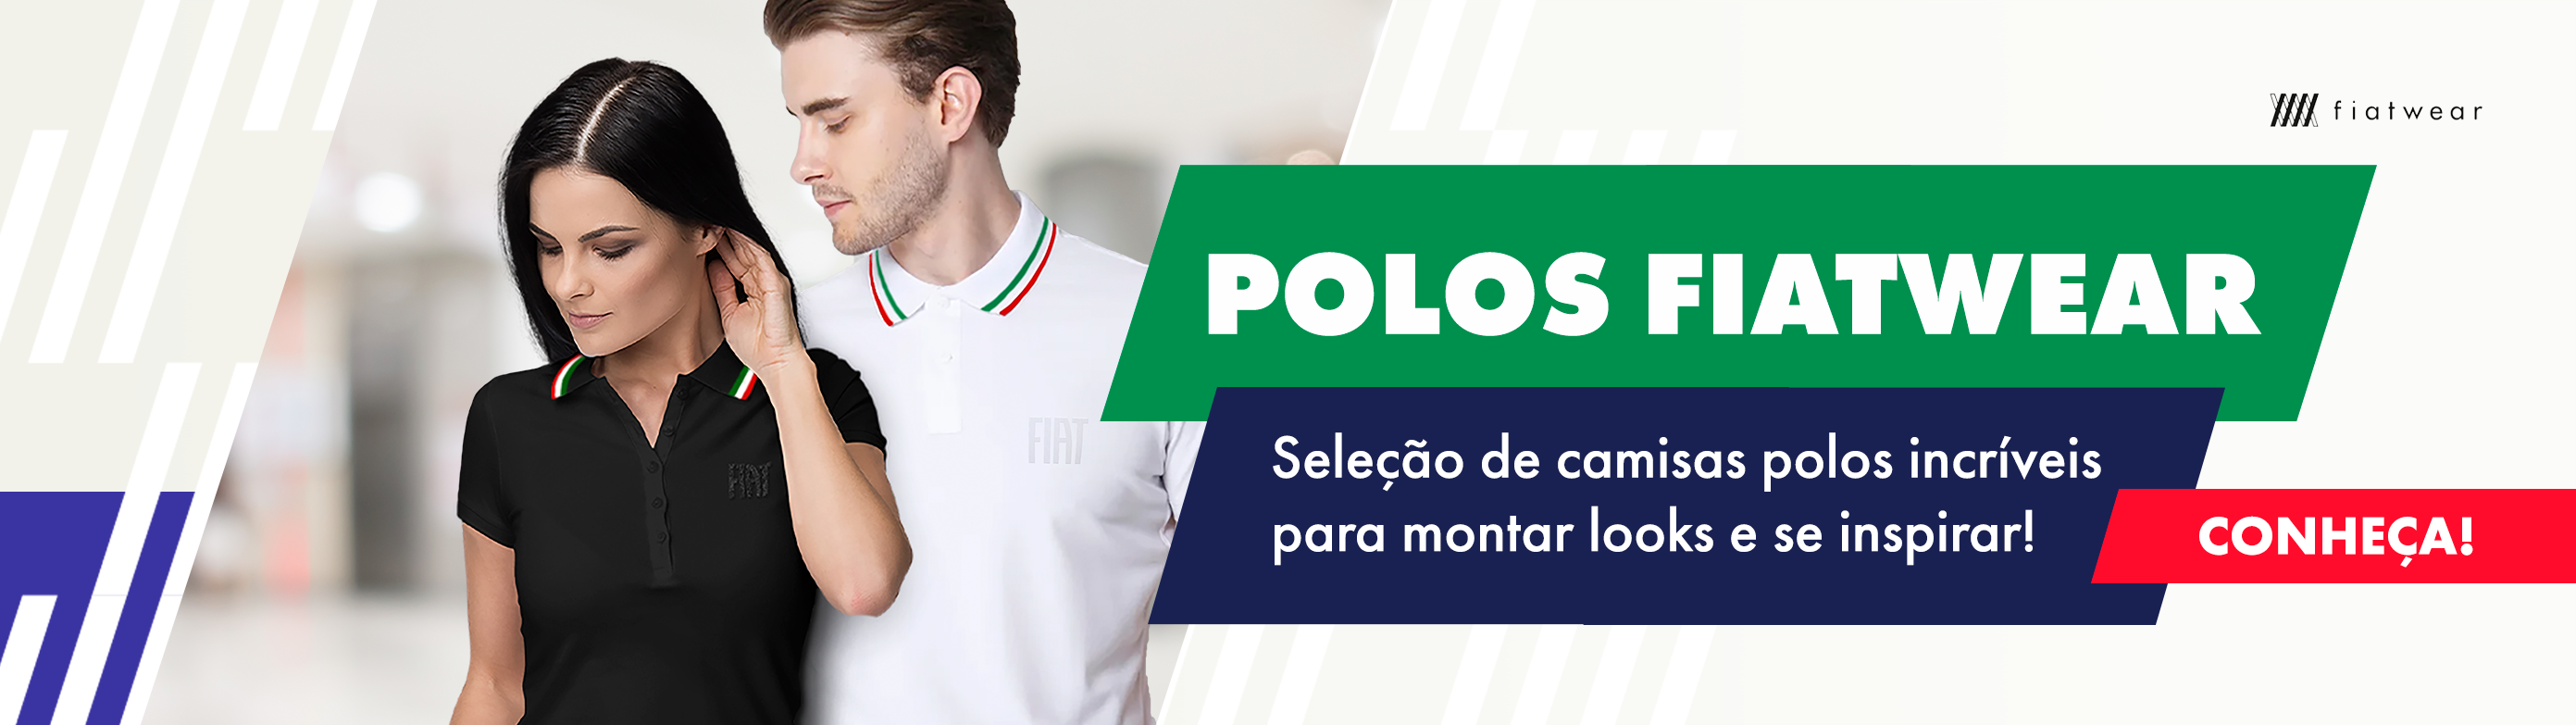 Polos - Fiatwear